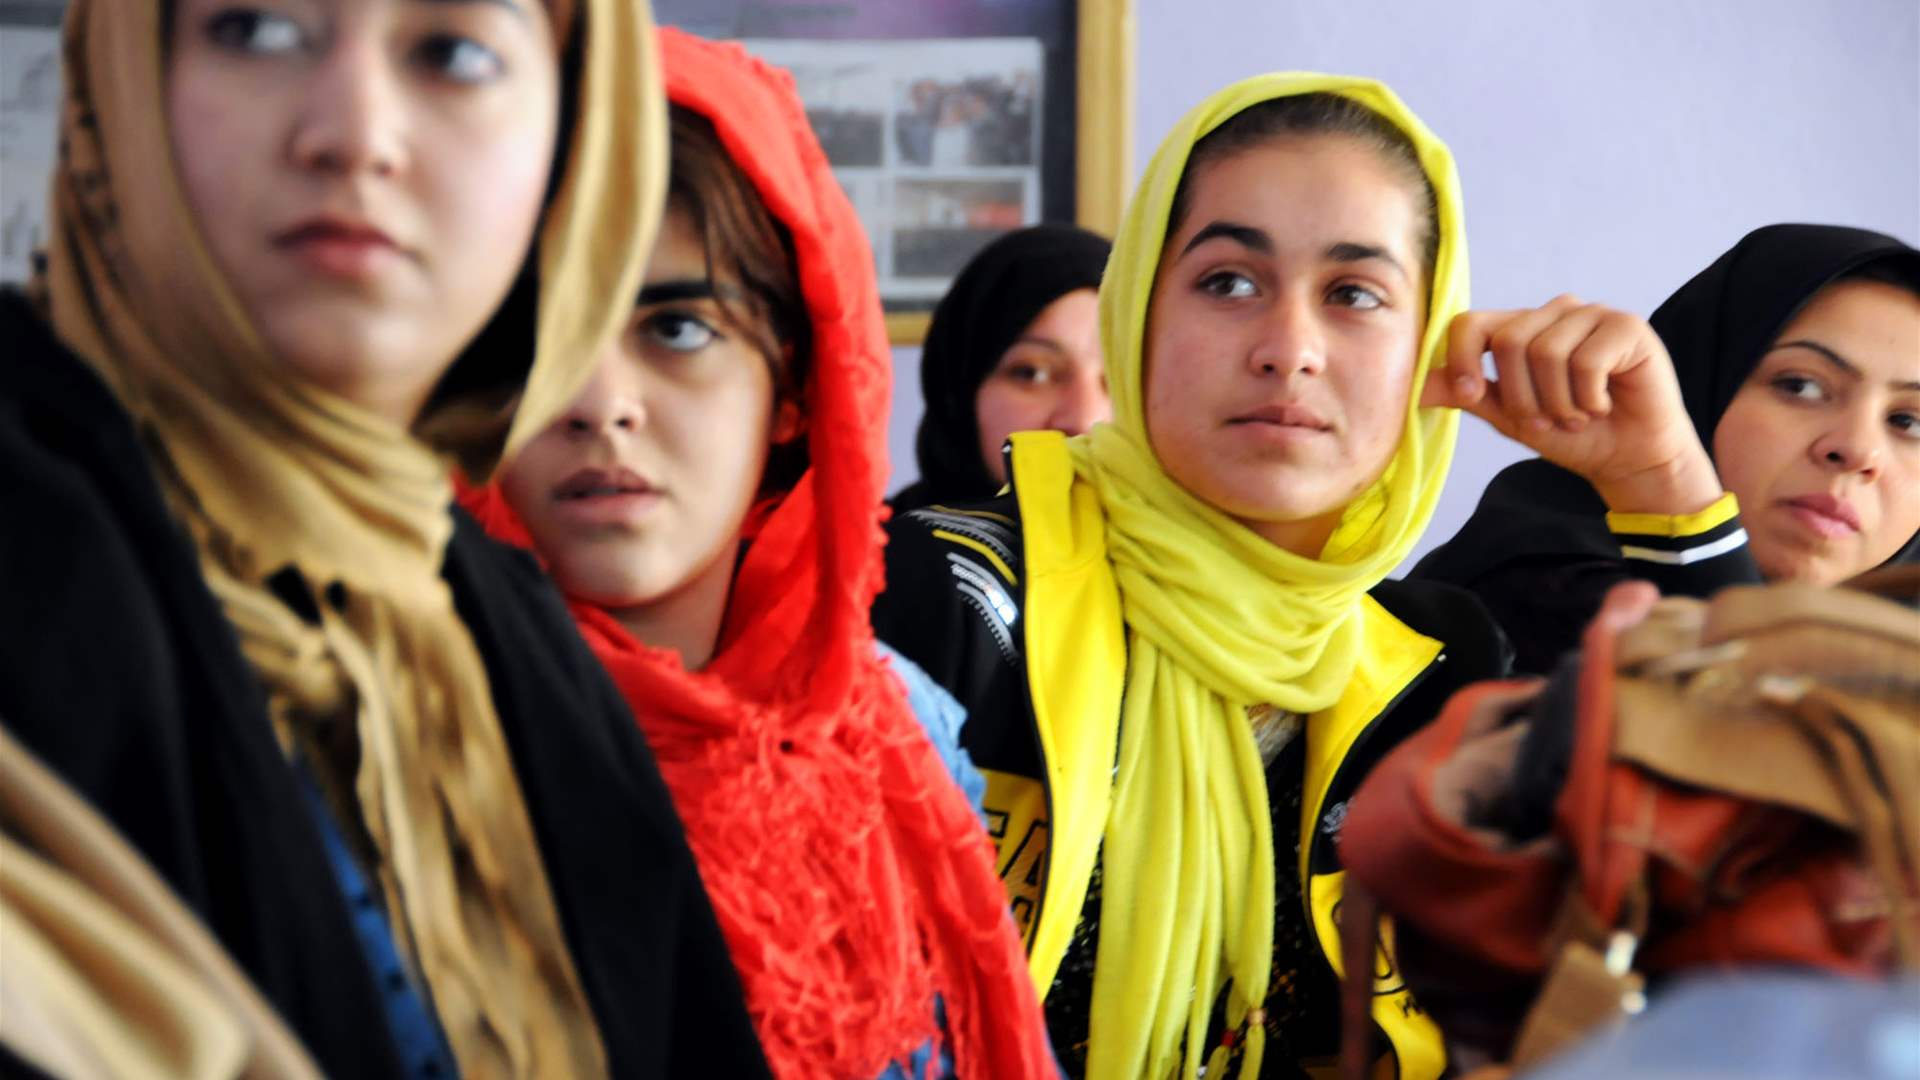 الأمم المتحدة تندّد استبعاد النساء من الحياة العامة في أفغانستان